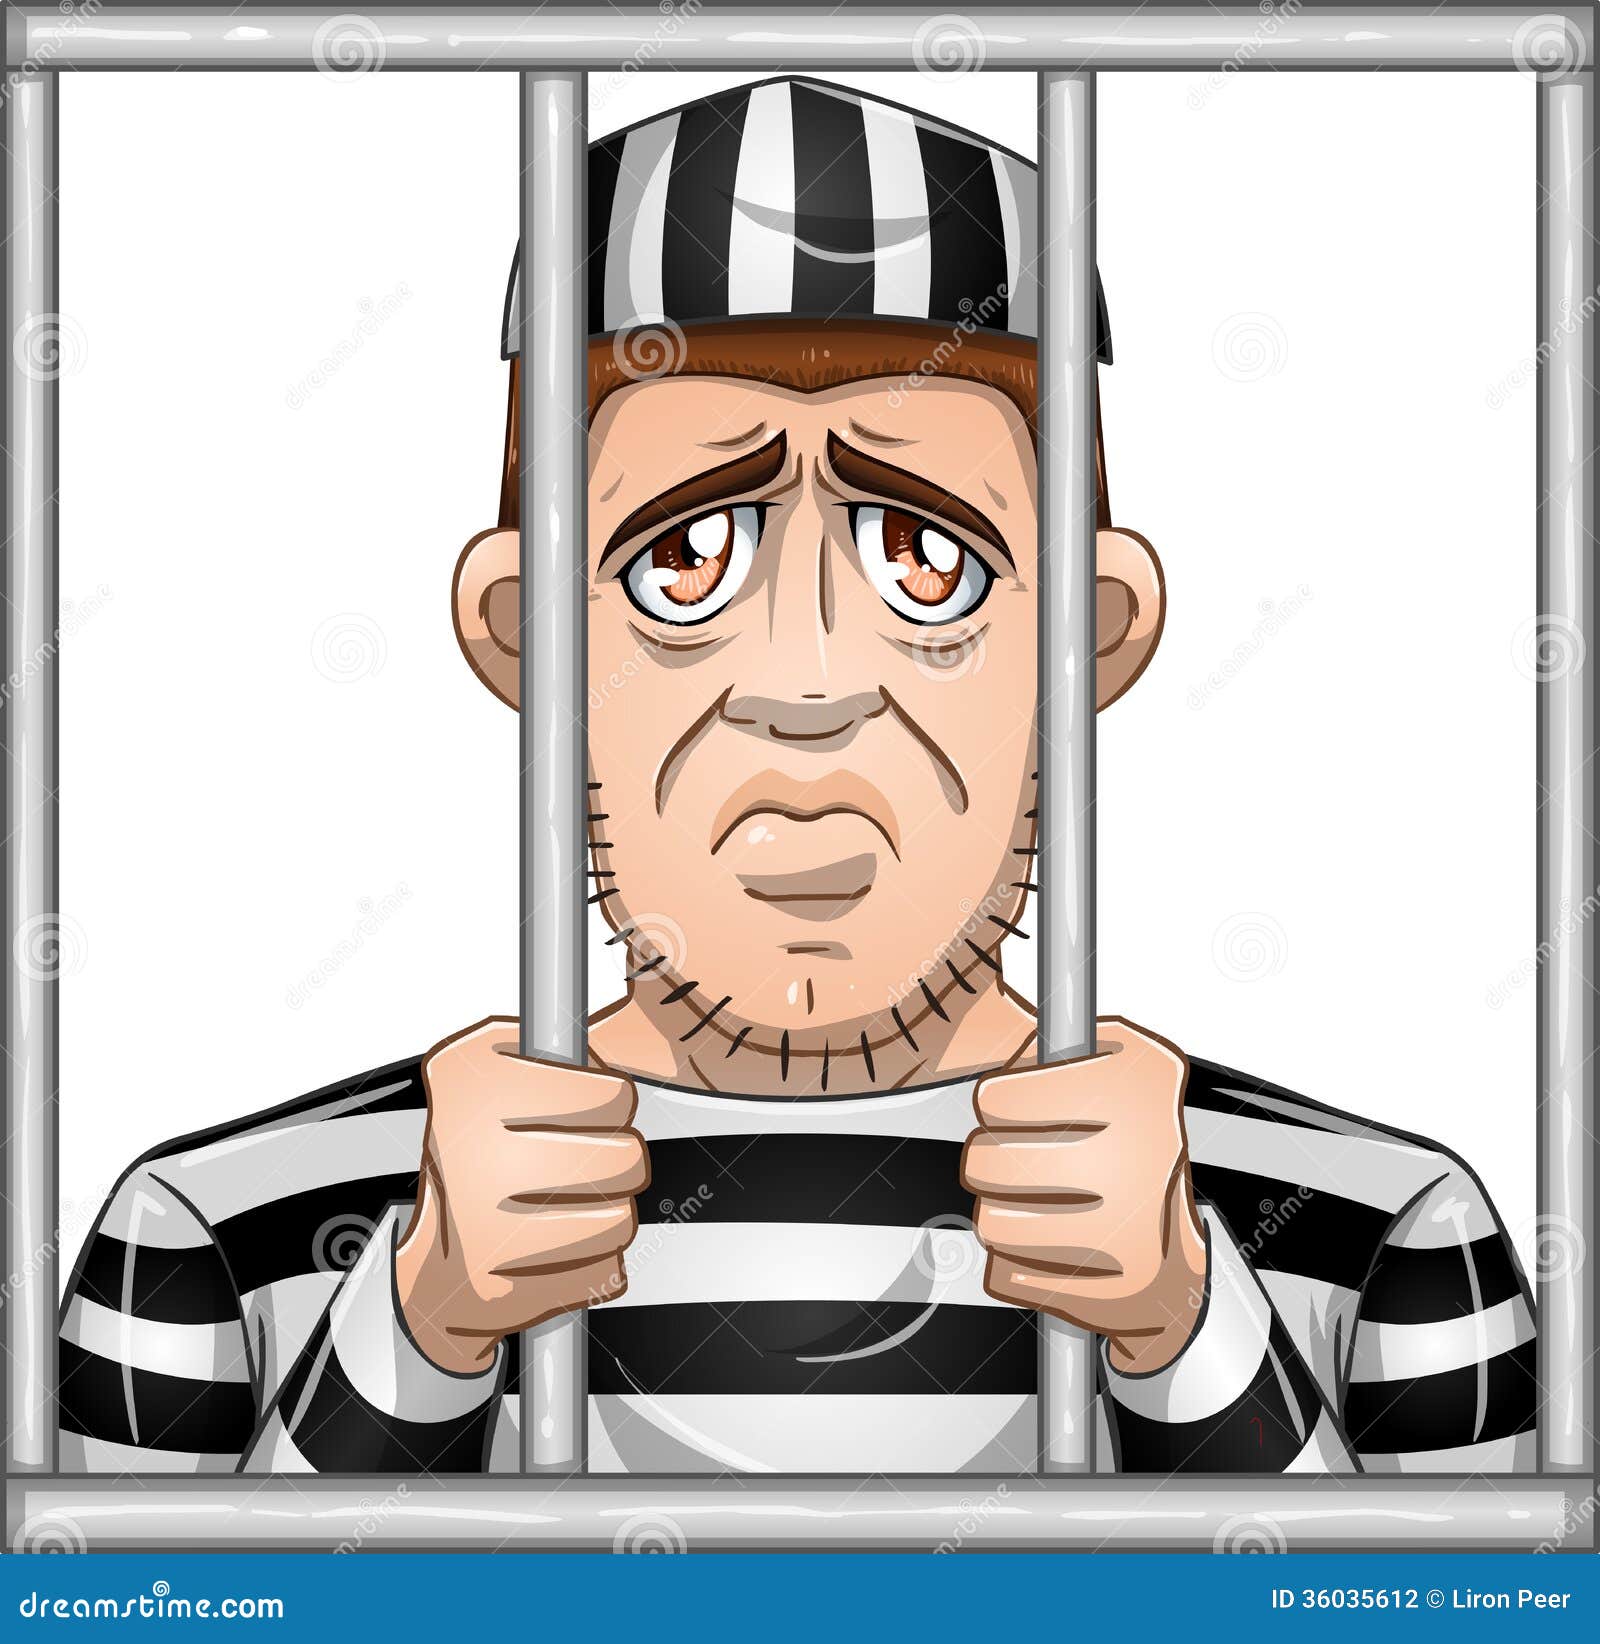 sad-prisoner-behind-bars-vector-illustration-locked-jail-36035612.jpg